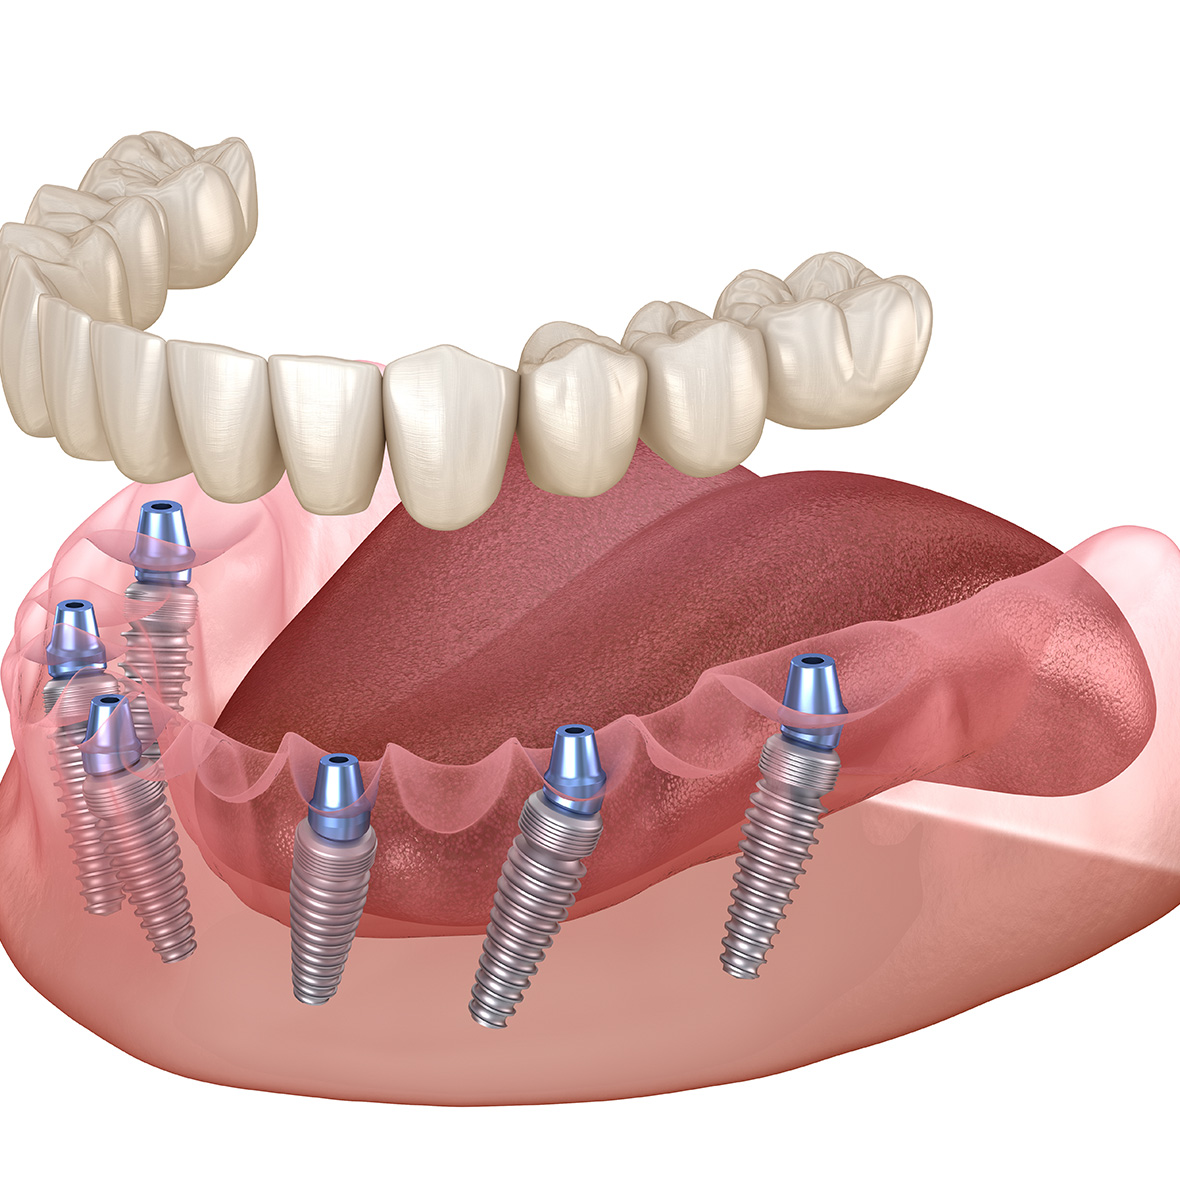 All-on-6 fogpótlási megoldás fogimplantátummal.